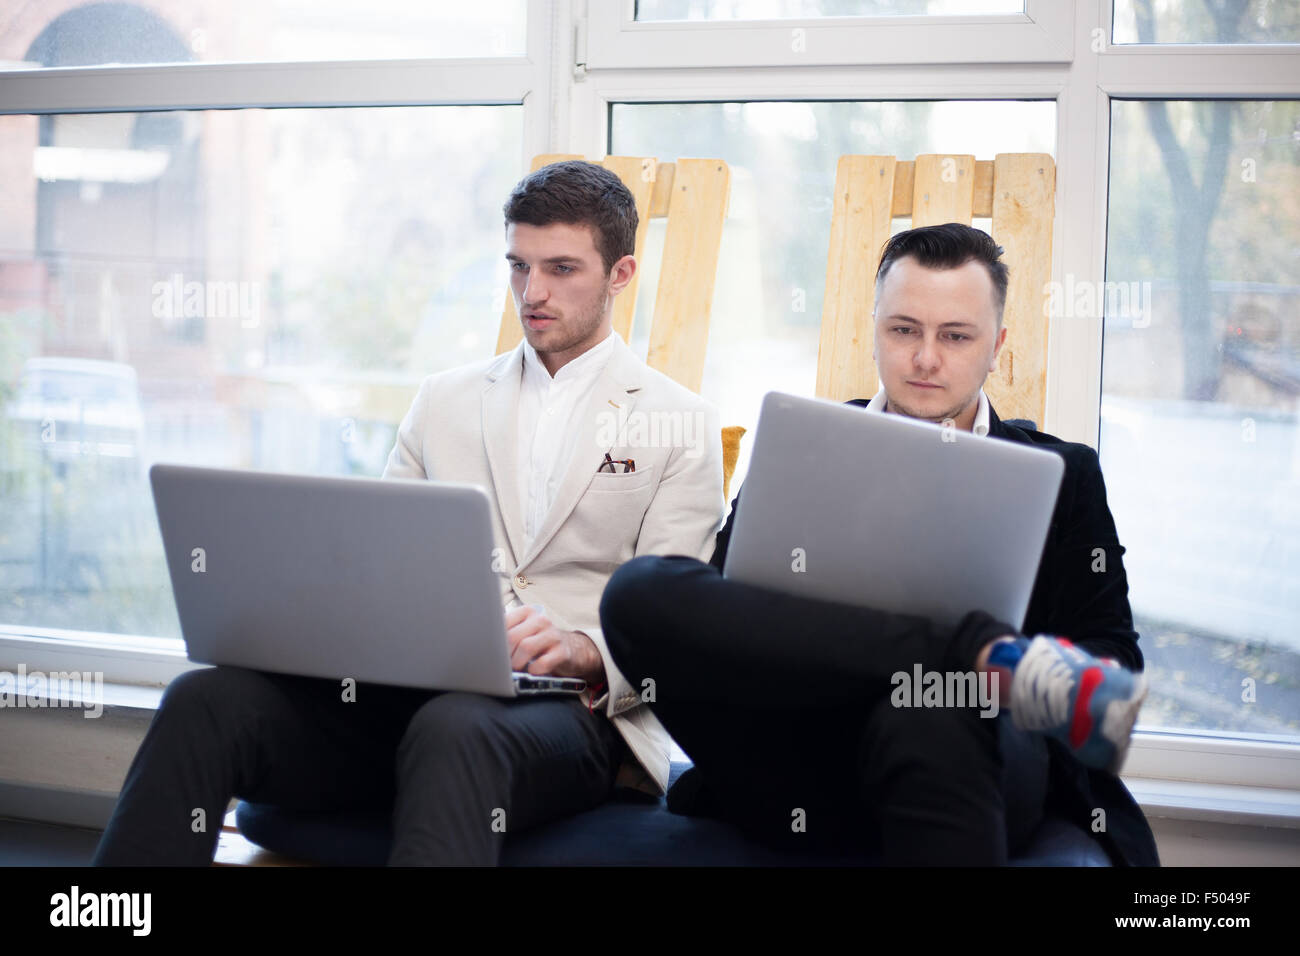 Men using laptops in startup center Stock Photo